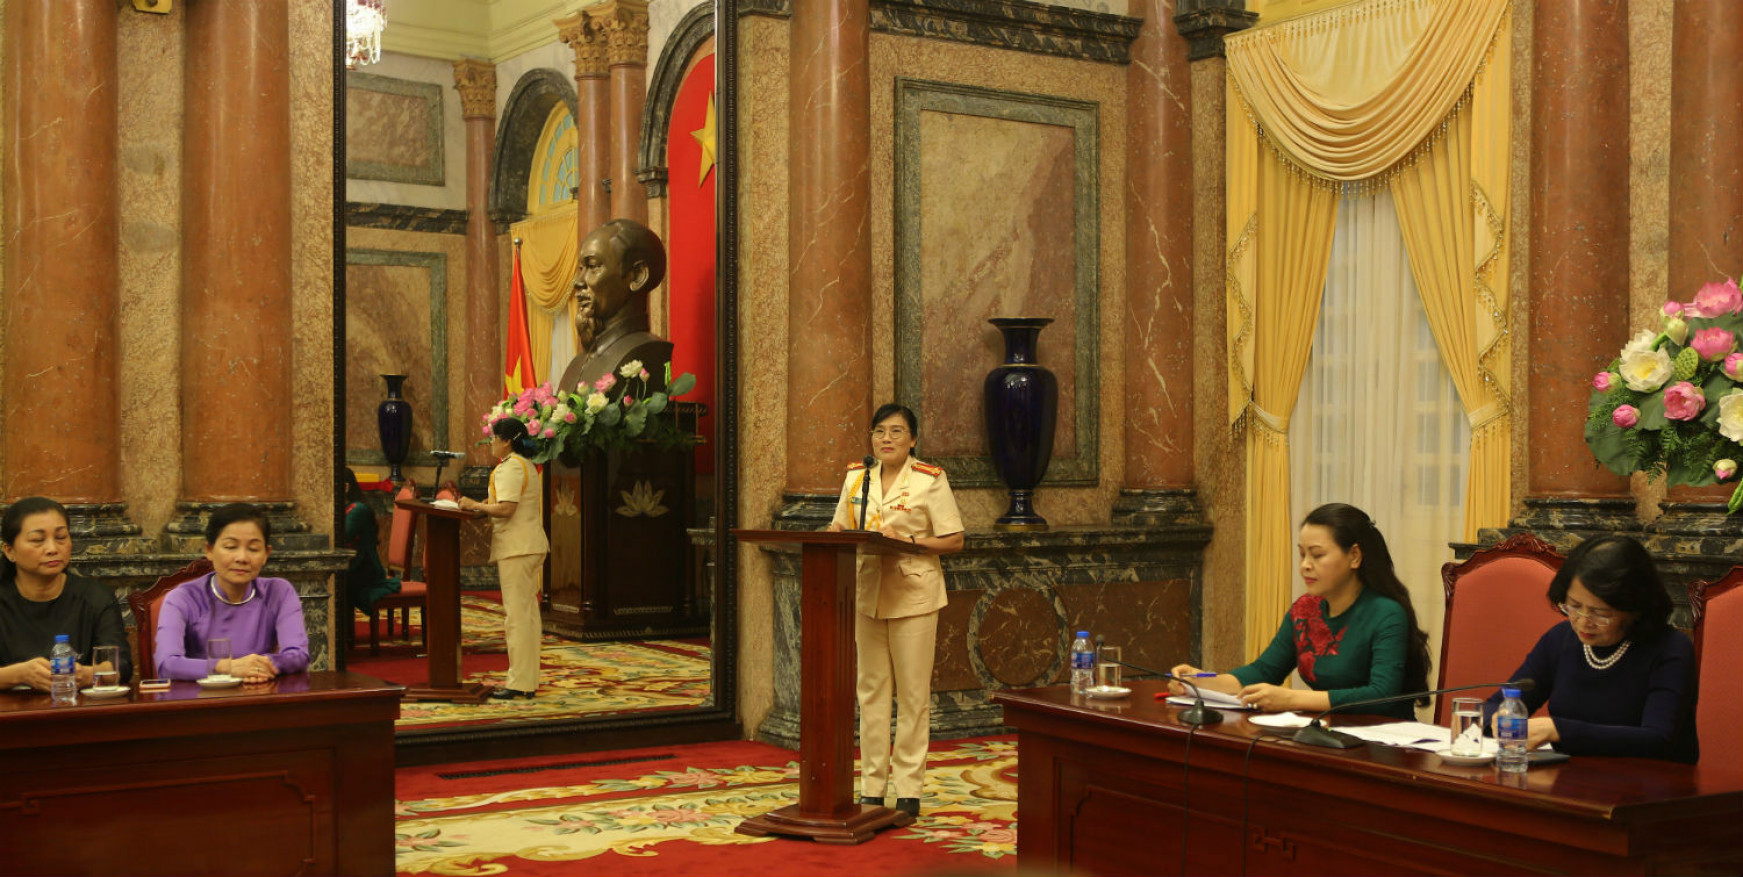 Tại buổi gặp mặt, thượng tá Đỗ Thị Minh, Chủ tịch Hội Phụ nữ Tổng cục Hậu cần- Kỹ thuật, Bộ Công an, đại diện các cho phụ nữ báo cáo Phó Chủ tịch về công tác phụ nữ trong thời gian qua. 